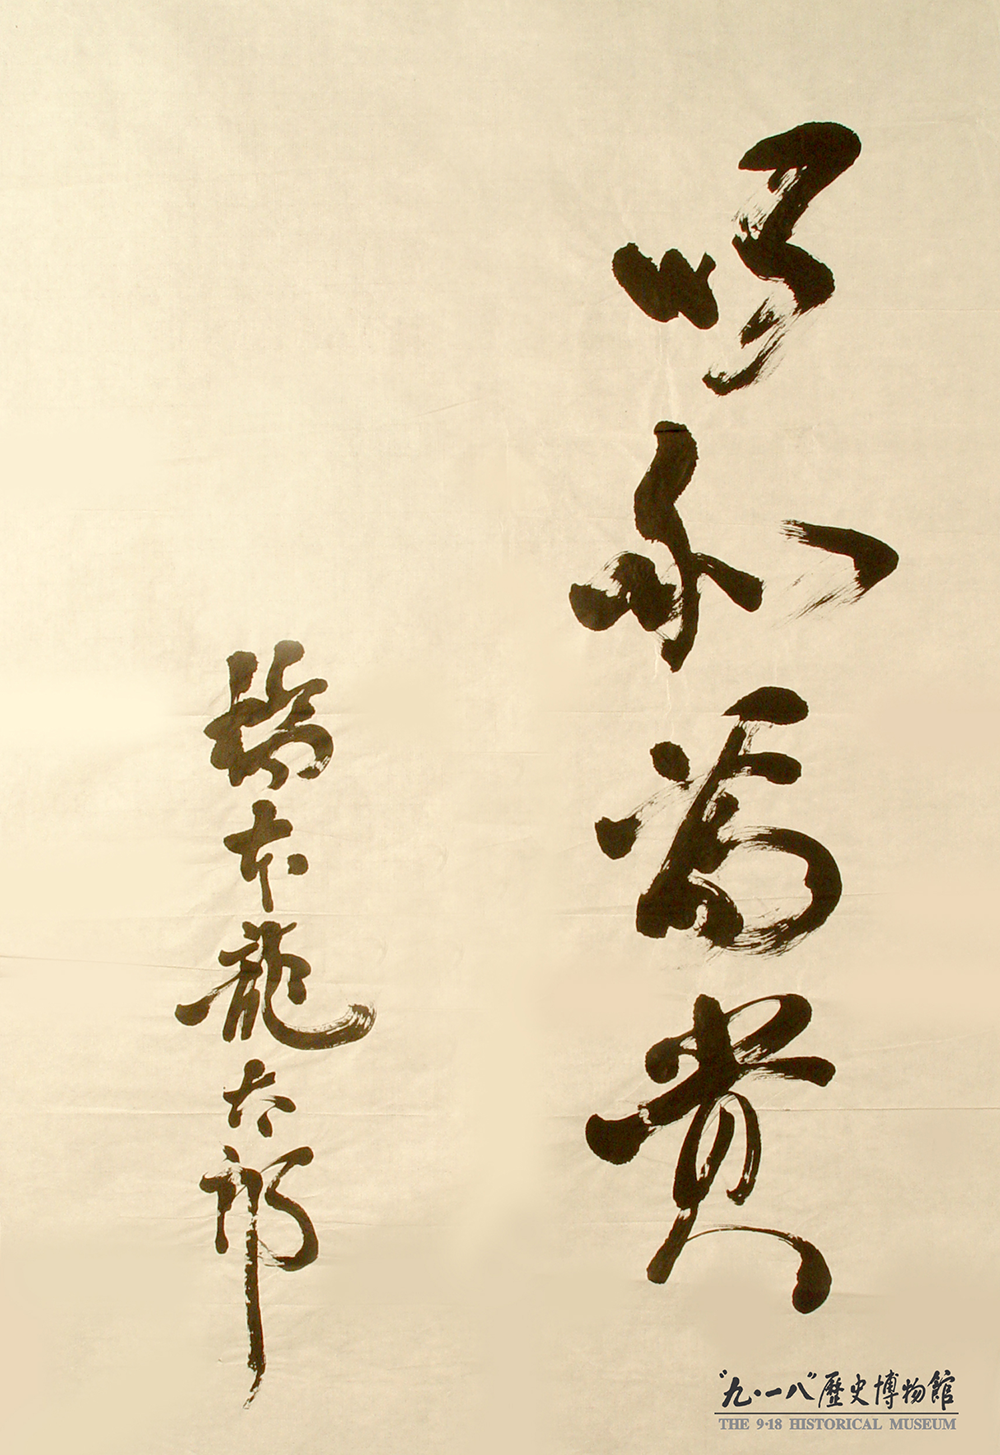 日本前首相橋本龍太郎題字“以和為貴”